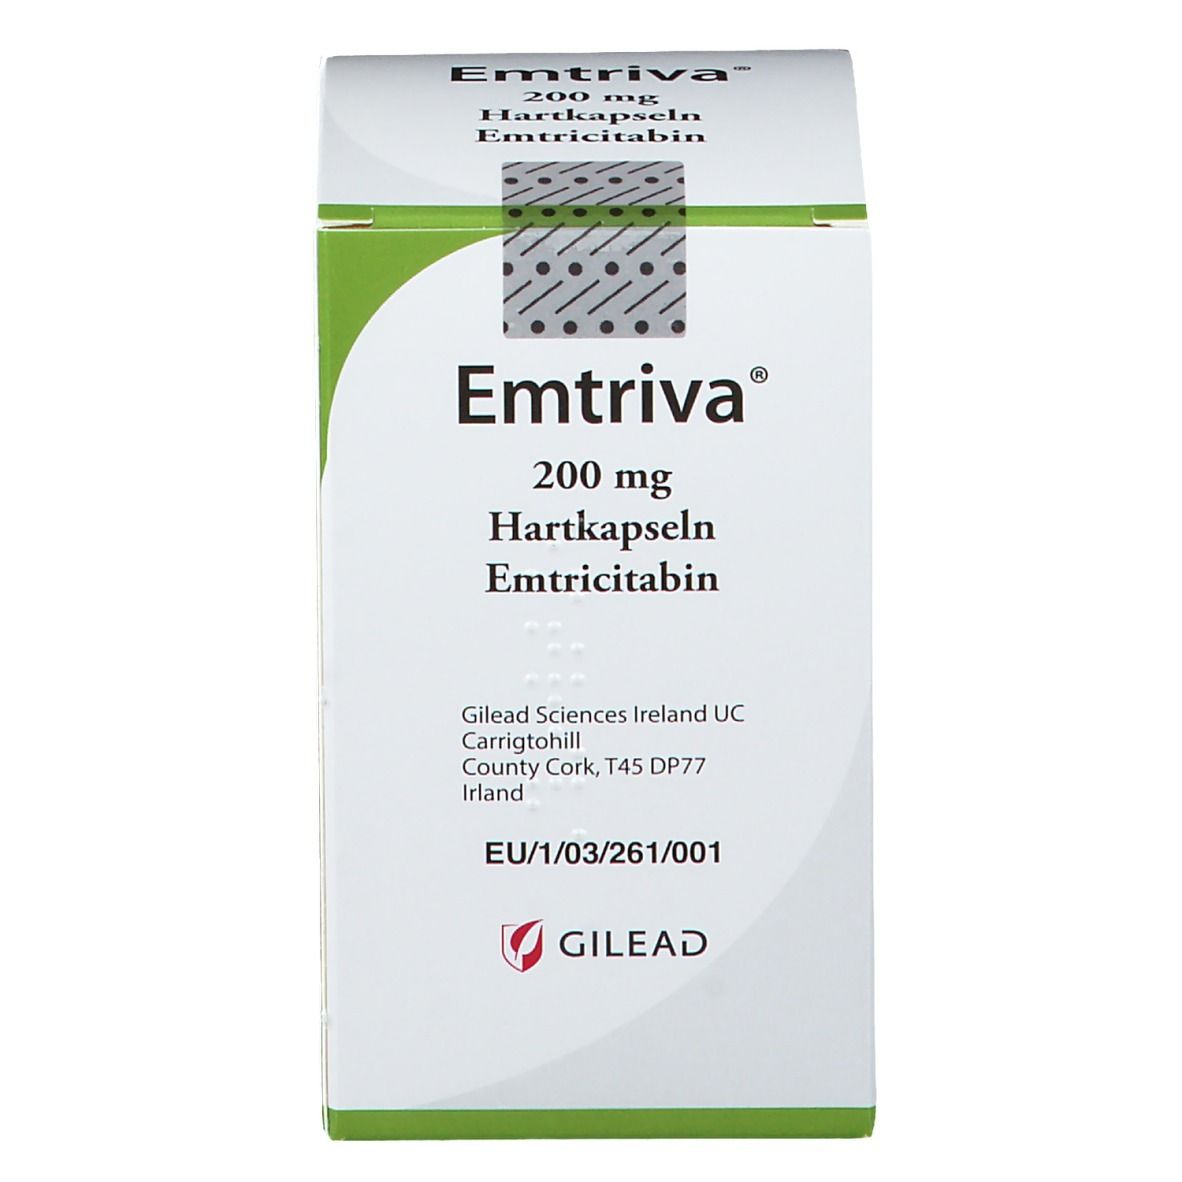 Emtriva® 200 mg